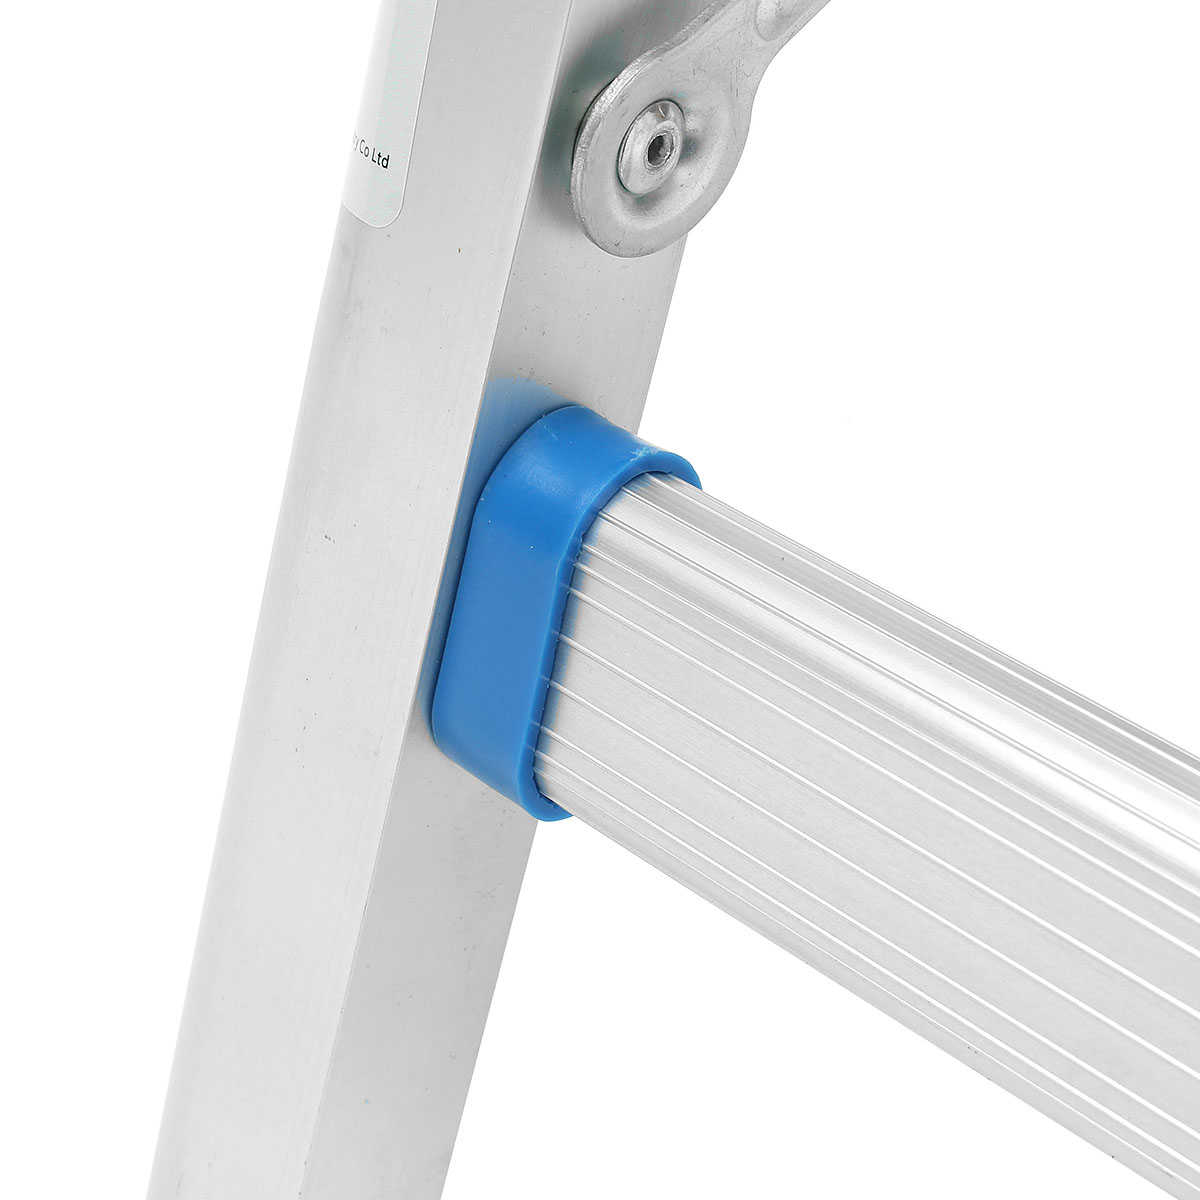 2 Step Aluminum Folding Ladder Platform Work Stool 330lbs/150kg Load Capacity Safe